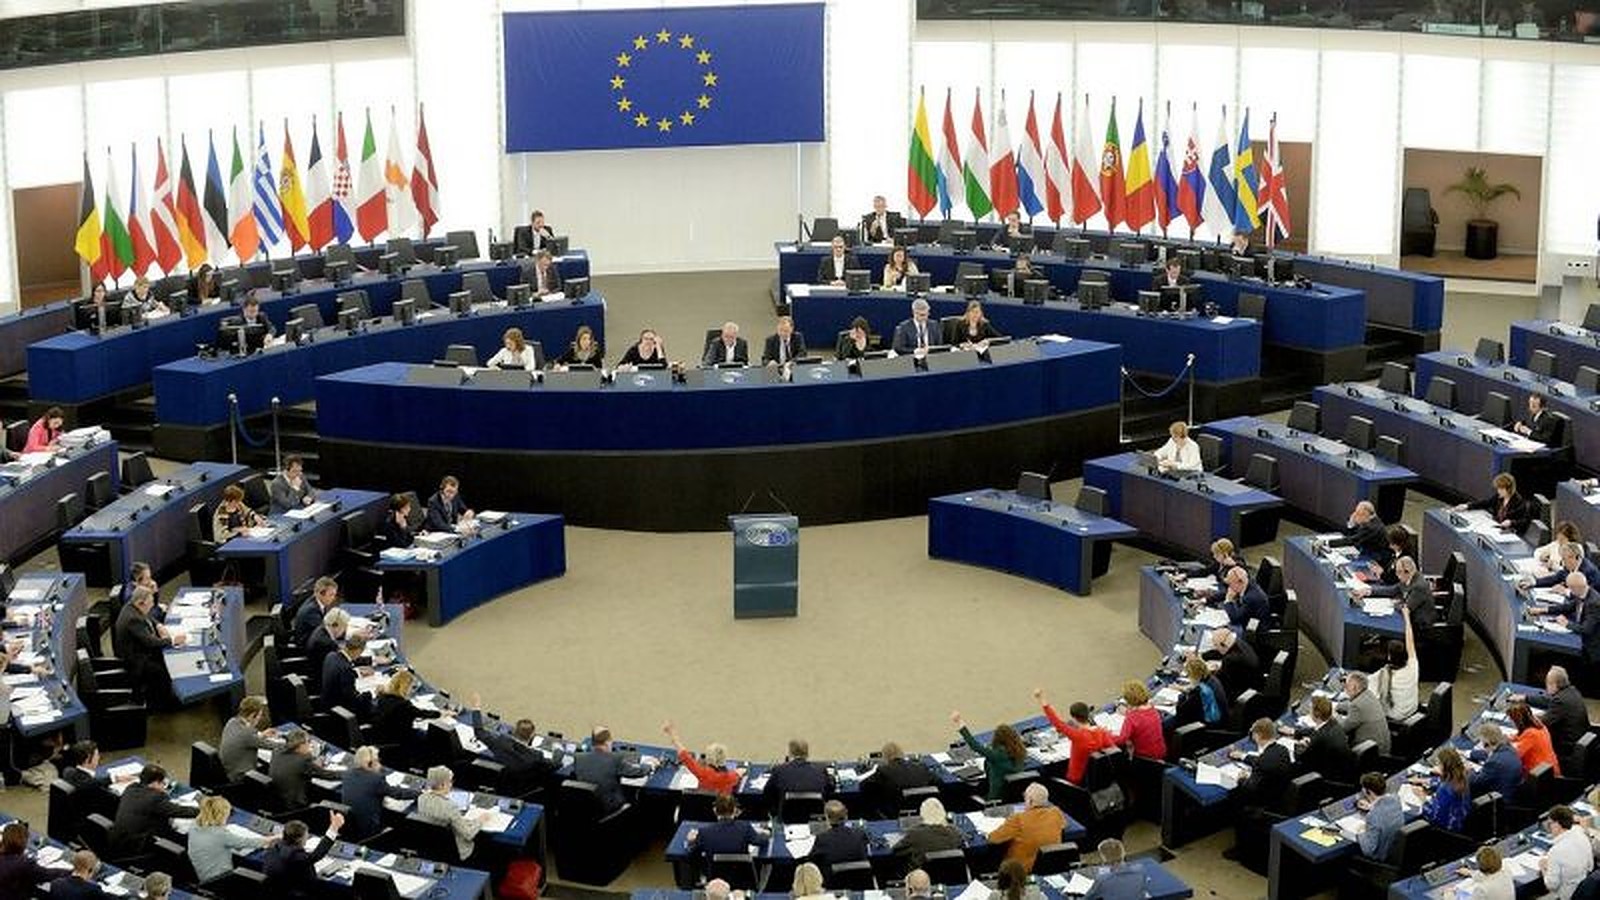 भारतको नागरिकता संशोधनसम्बन्धी कानुनबारे युरोपेली संघको संसदमा बहस